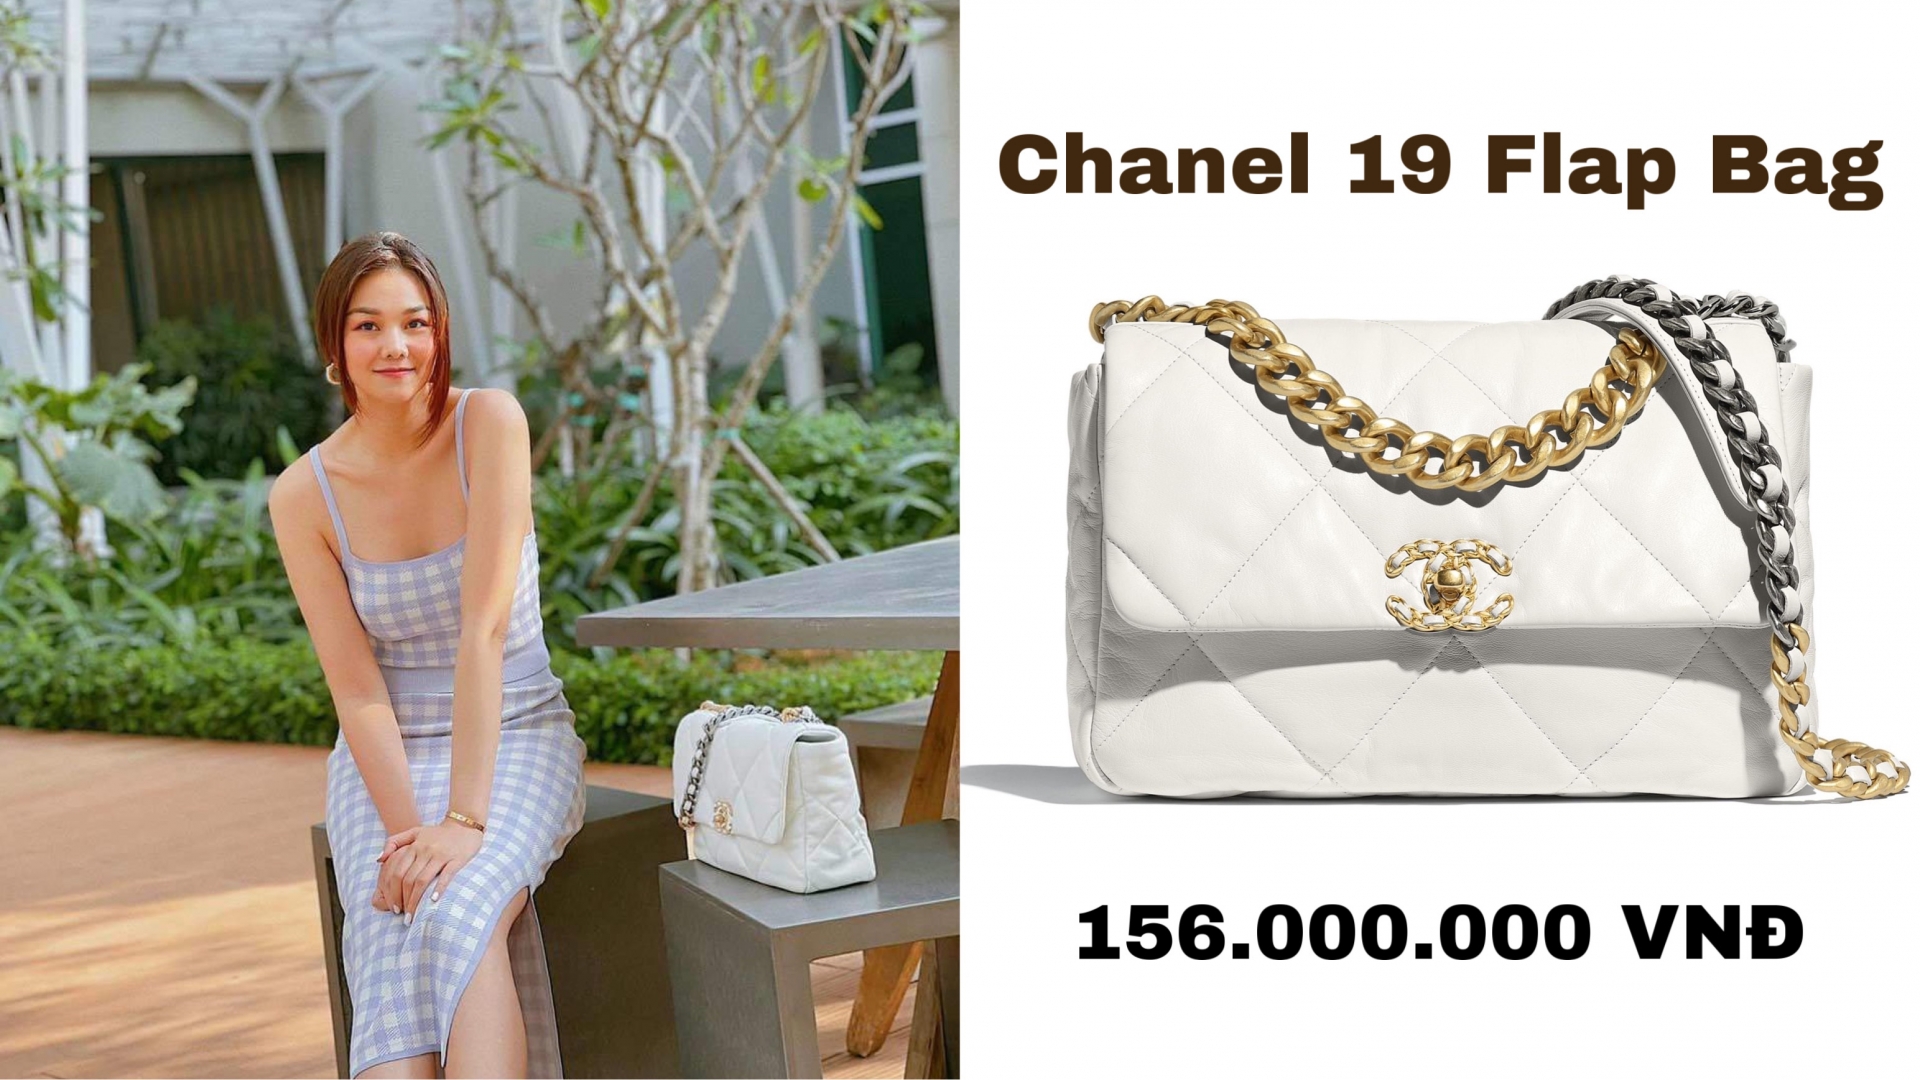 Người đẹp cũng sở hữu một phiên bản màu trắng có giá hơn 150 triệu đồng.